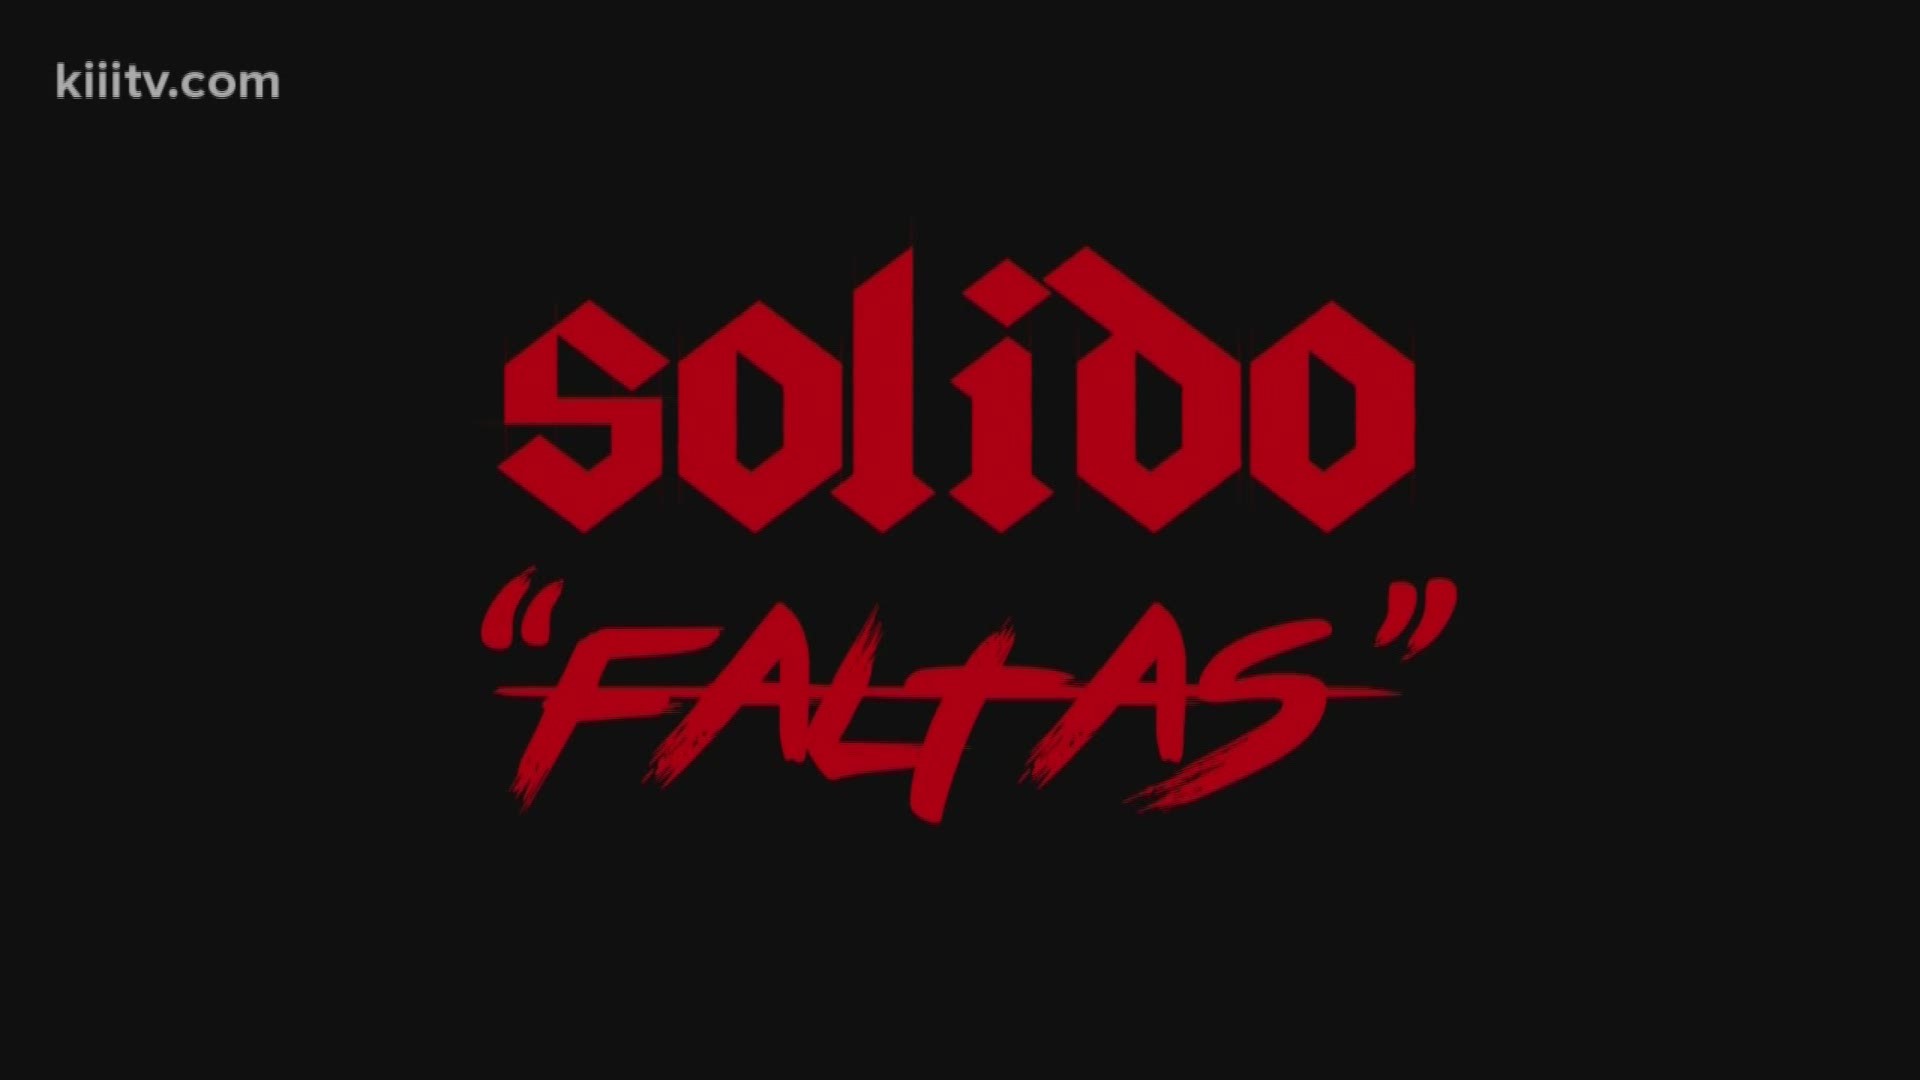 Solido Music Video "Faltas"